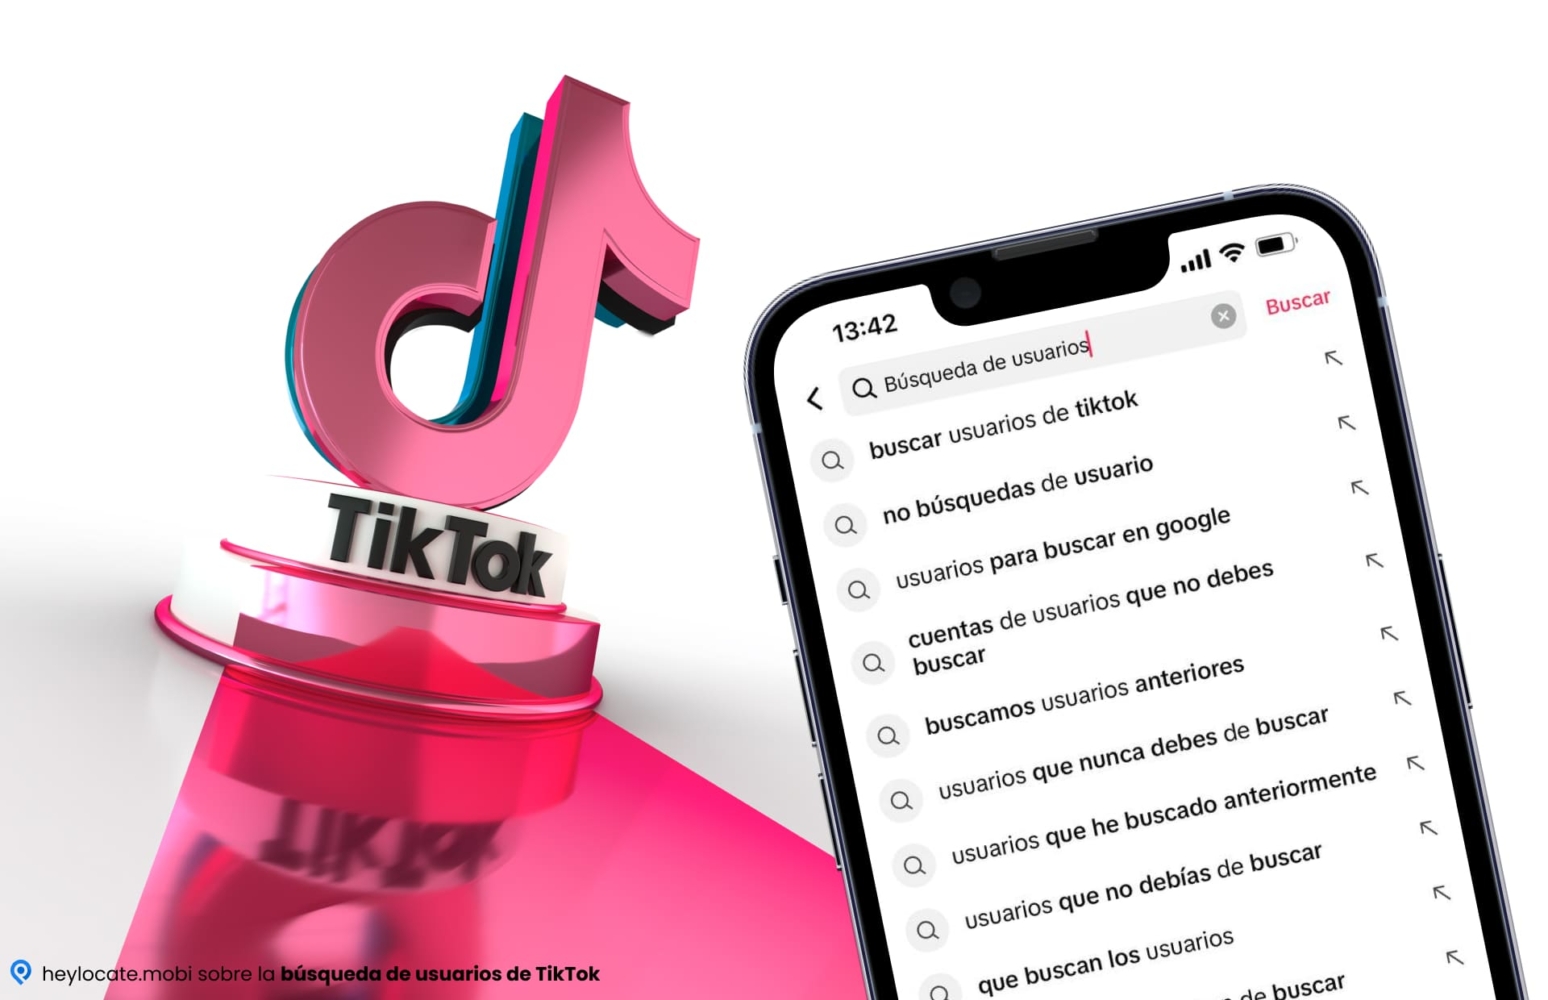 Esta imagen muestra el concepto de búsqueda de usuarios en la plataforma TikTok. El primer plano muestra una pantalla de teléfono móvil con "Búsqueda de usuario" en la barra de búsqueda y varias opciones de búsqueda de usuario y vista previa. El fondo muestra el logotipo de TikTok en colores rosa y azul brillantes. La sensación general de la imagen es de modernidad y orientación digital.